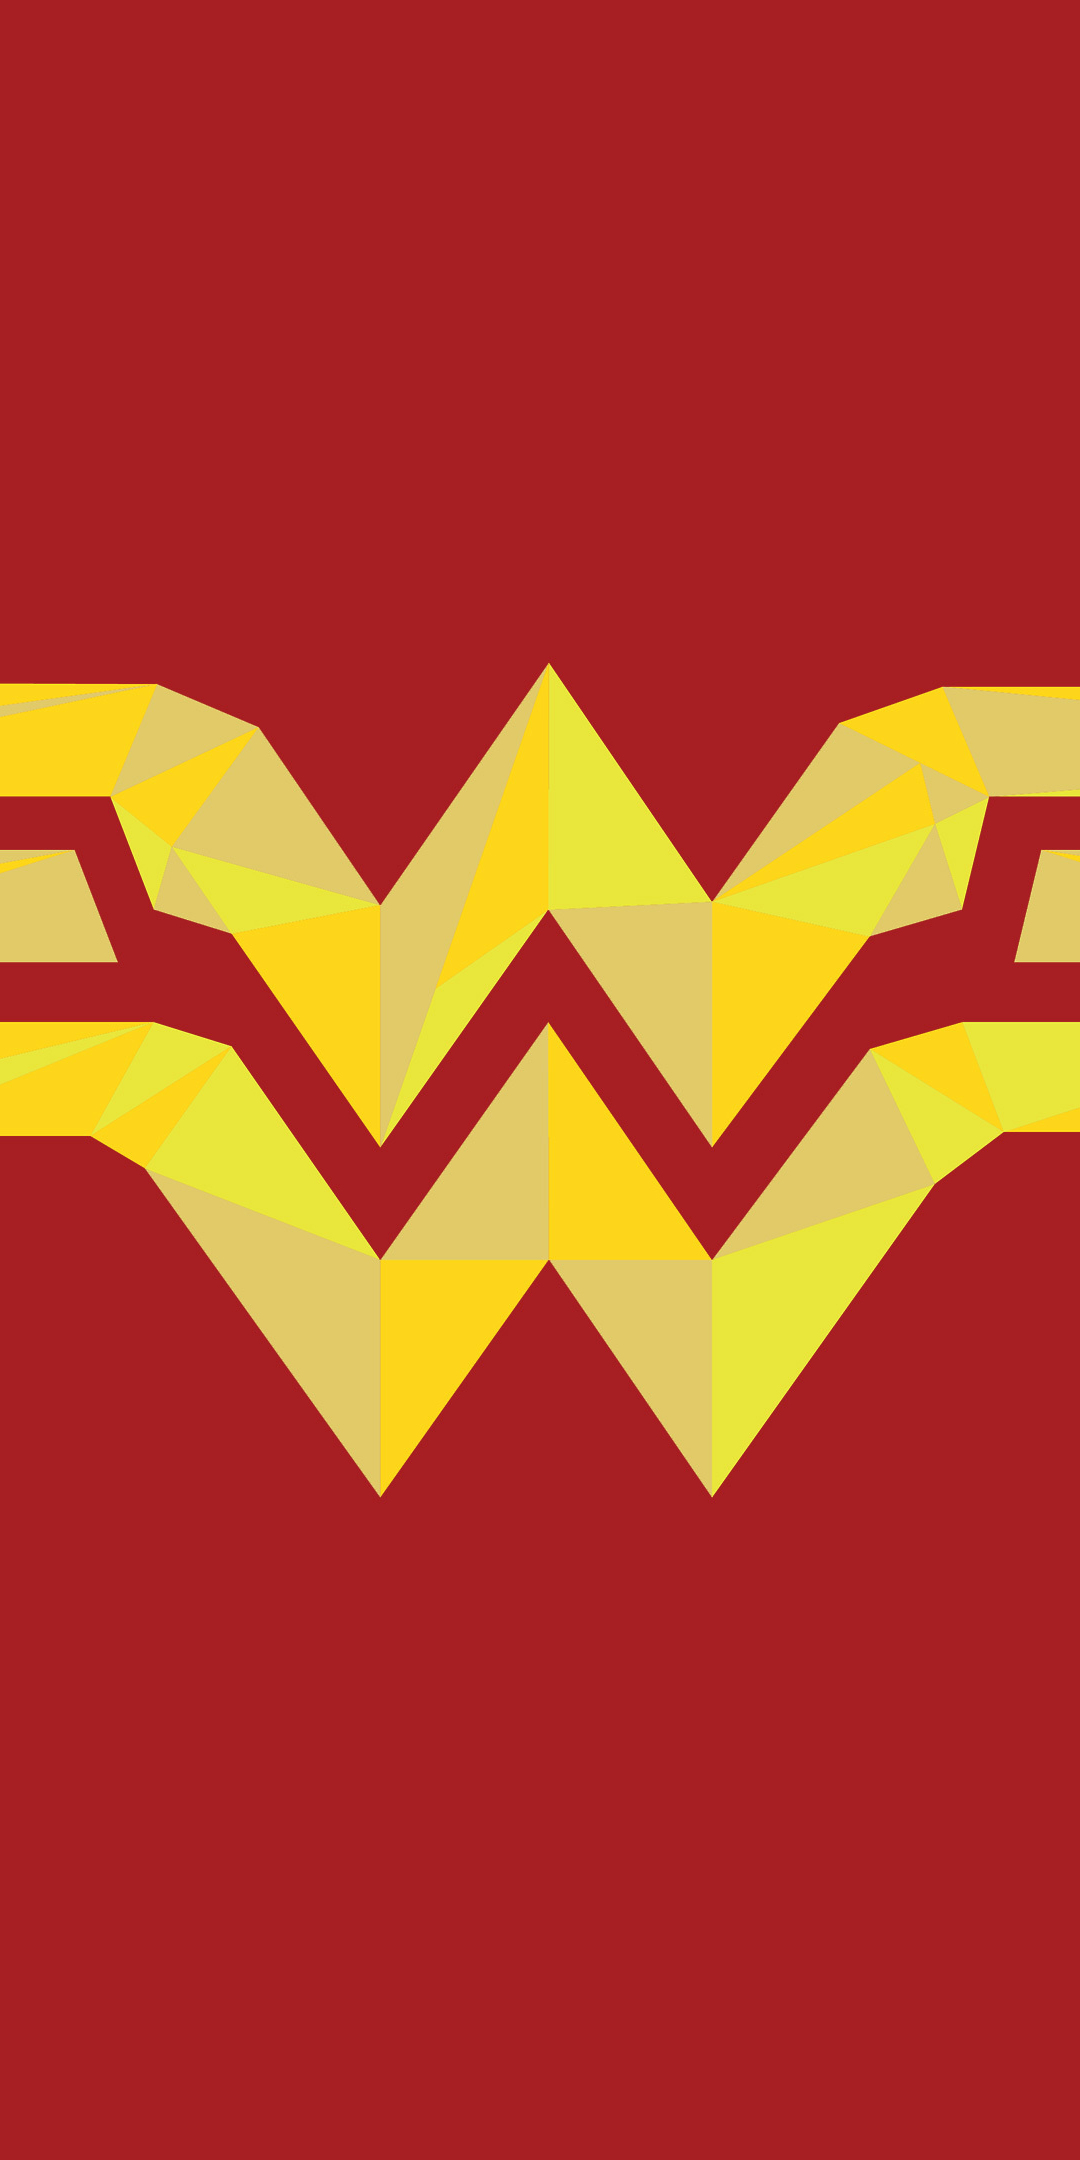 Wonder woman, logo, artwork, 1080x2160 wallpaper